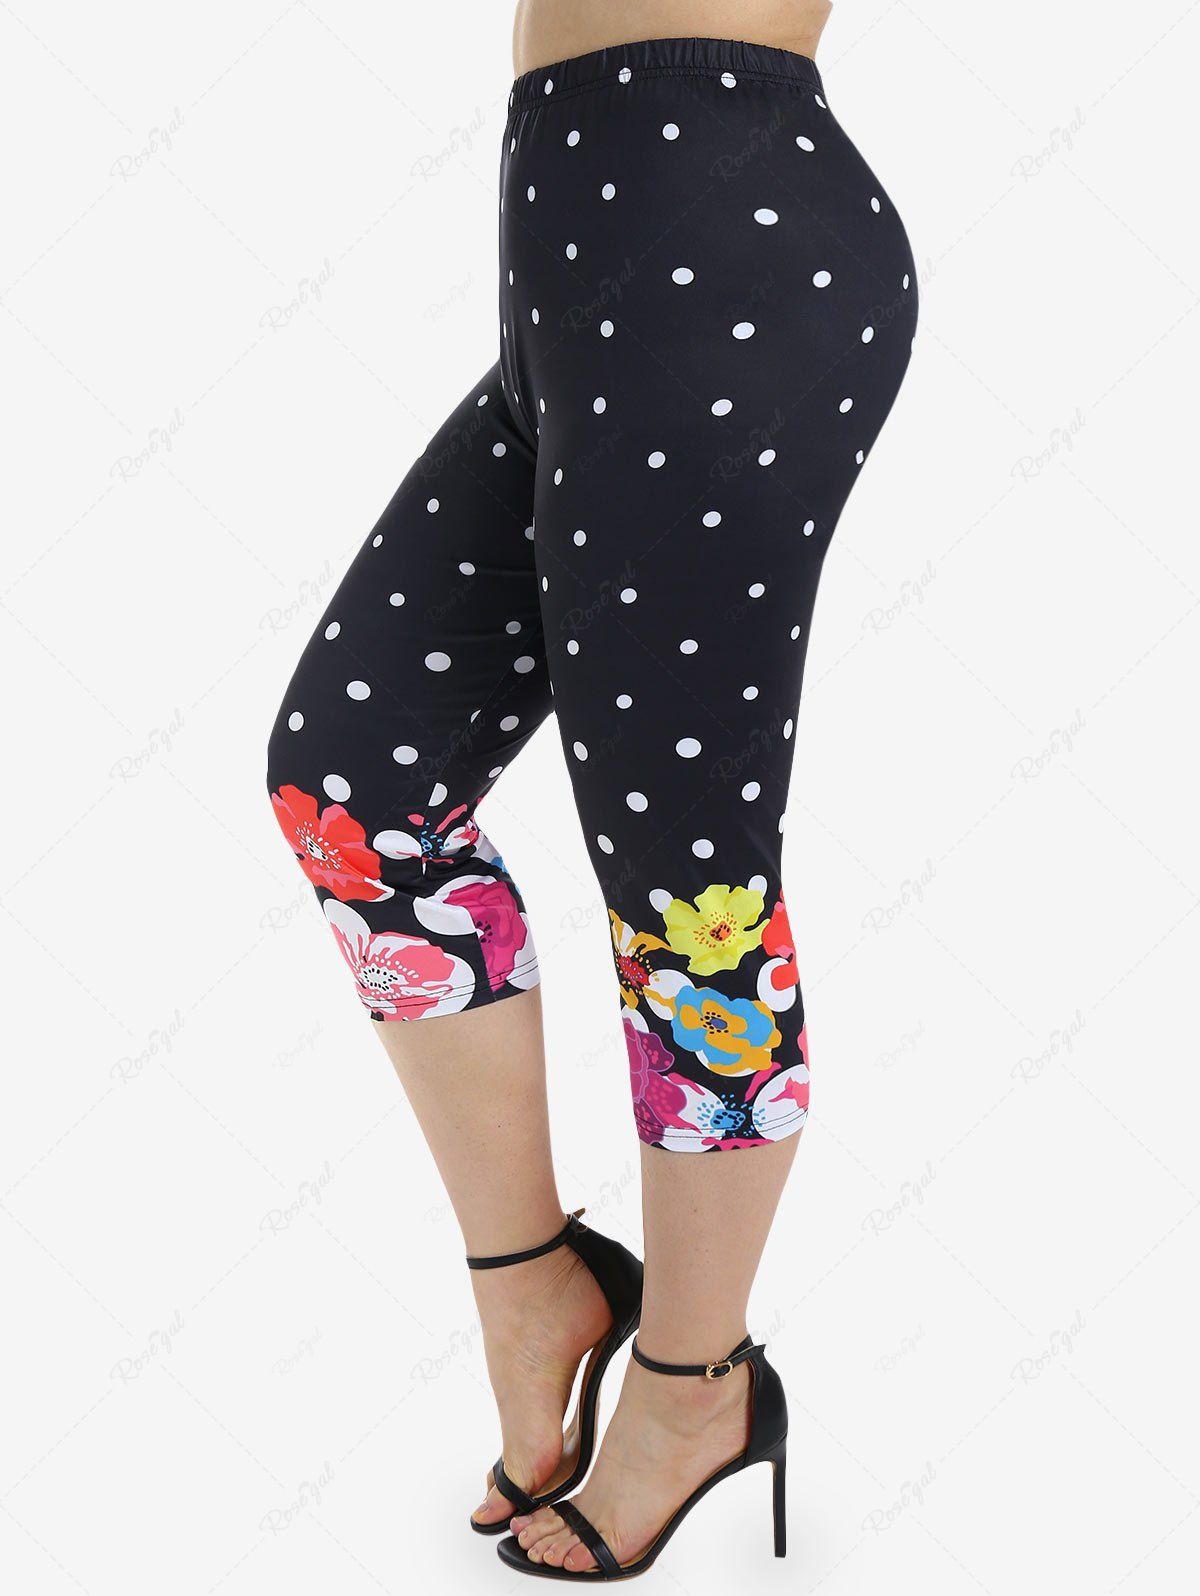 Fashion Plus Size Polka Dot Floral Print Capri Leggings  